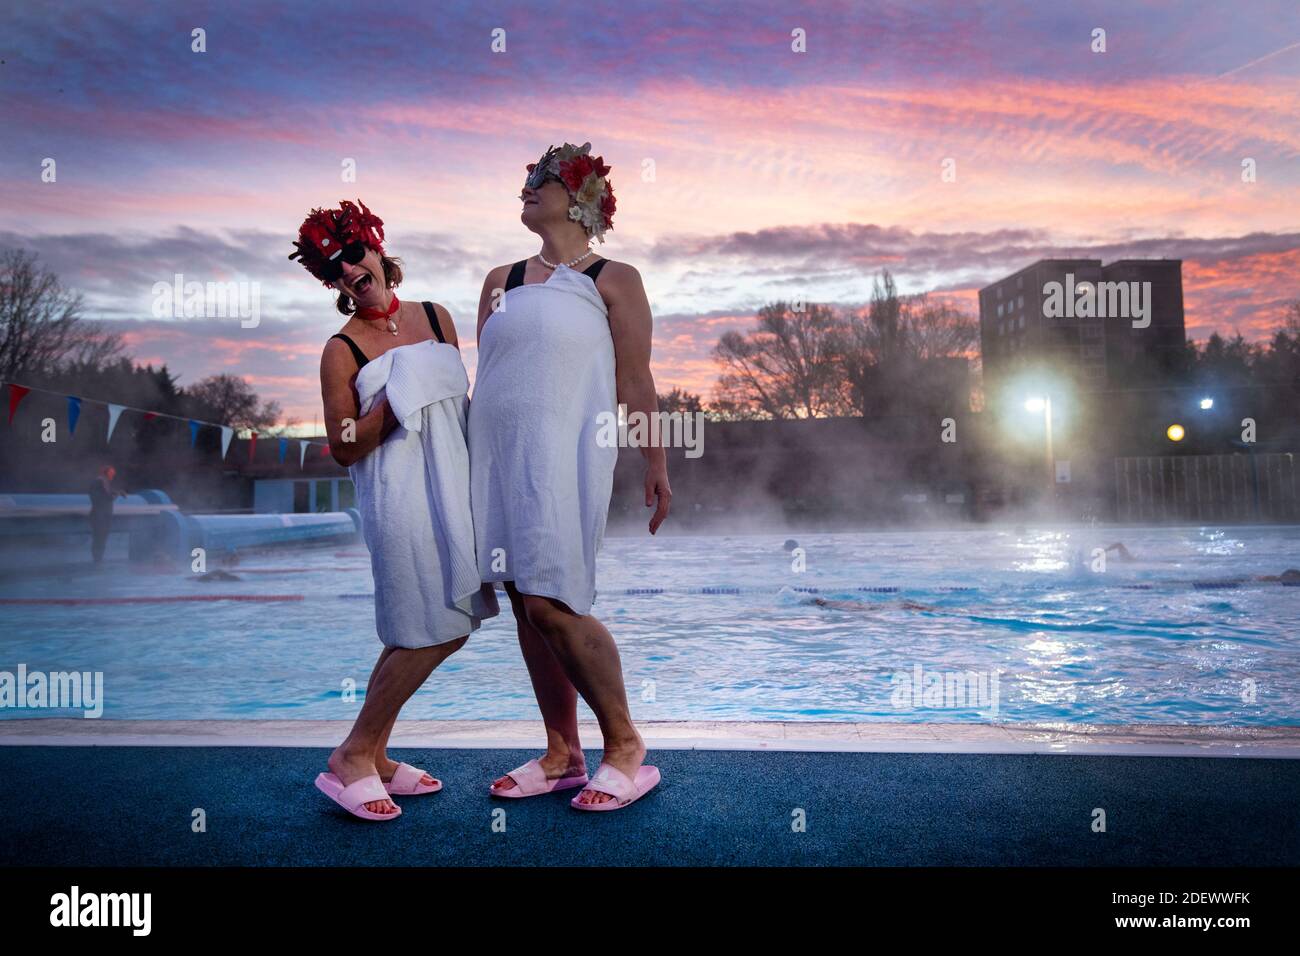 Jessica Walker e Nicola Foster, noti come Lido Ladies, posano presso la piscina durante l'alba prima di nuotare a Charlton Lido in Hornfair Park, Londra, il suo primo giorno di riapertura dopo la fine del secondo blocco nazionale e l'Inghilterra entra in un sistema rafforzato di restrizioni regionali di coronavirus. Foto Stock